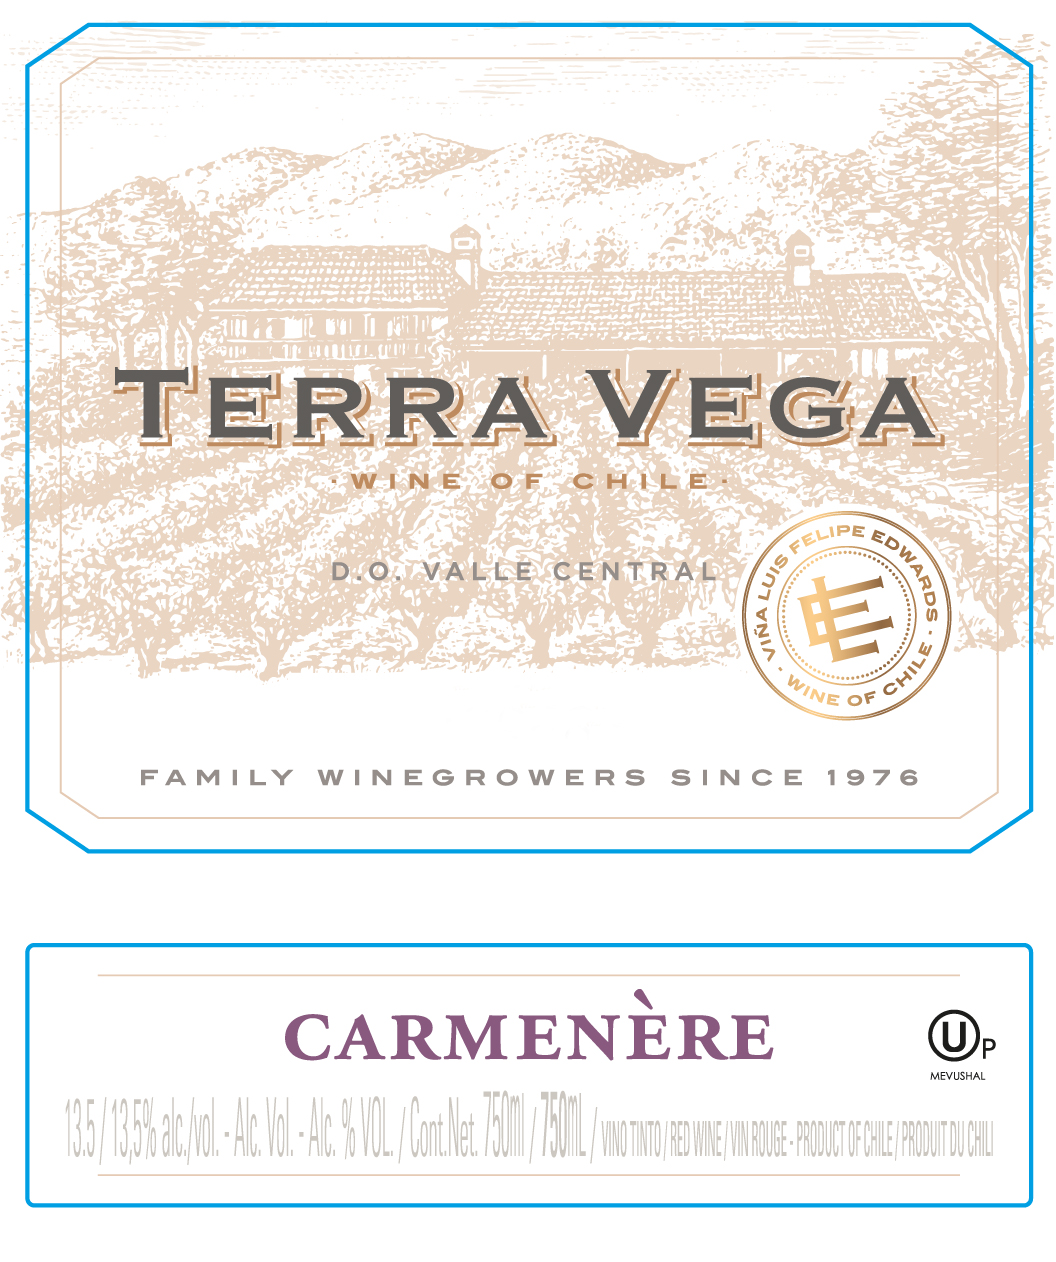 Terra Vega - Carmenere label